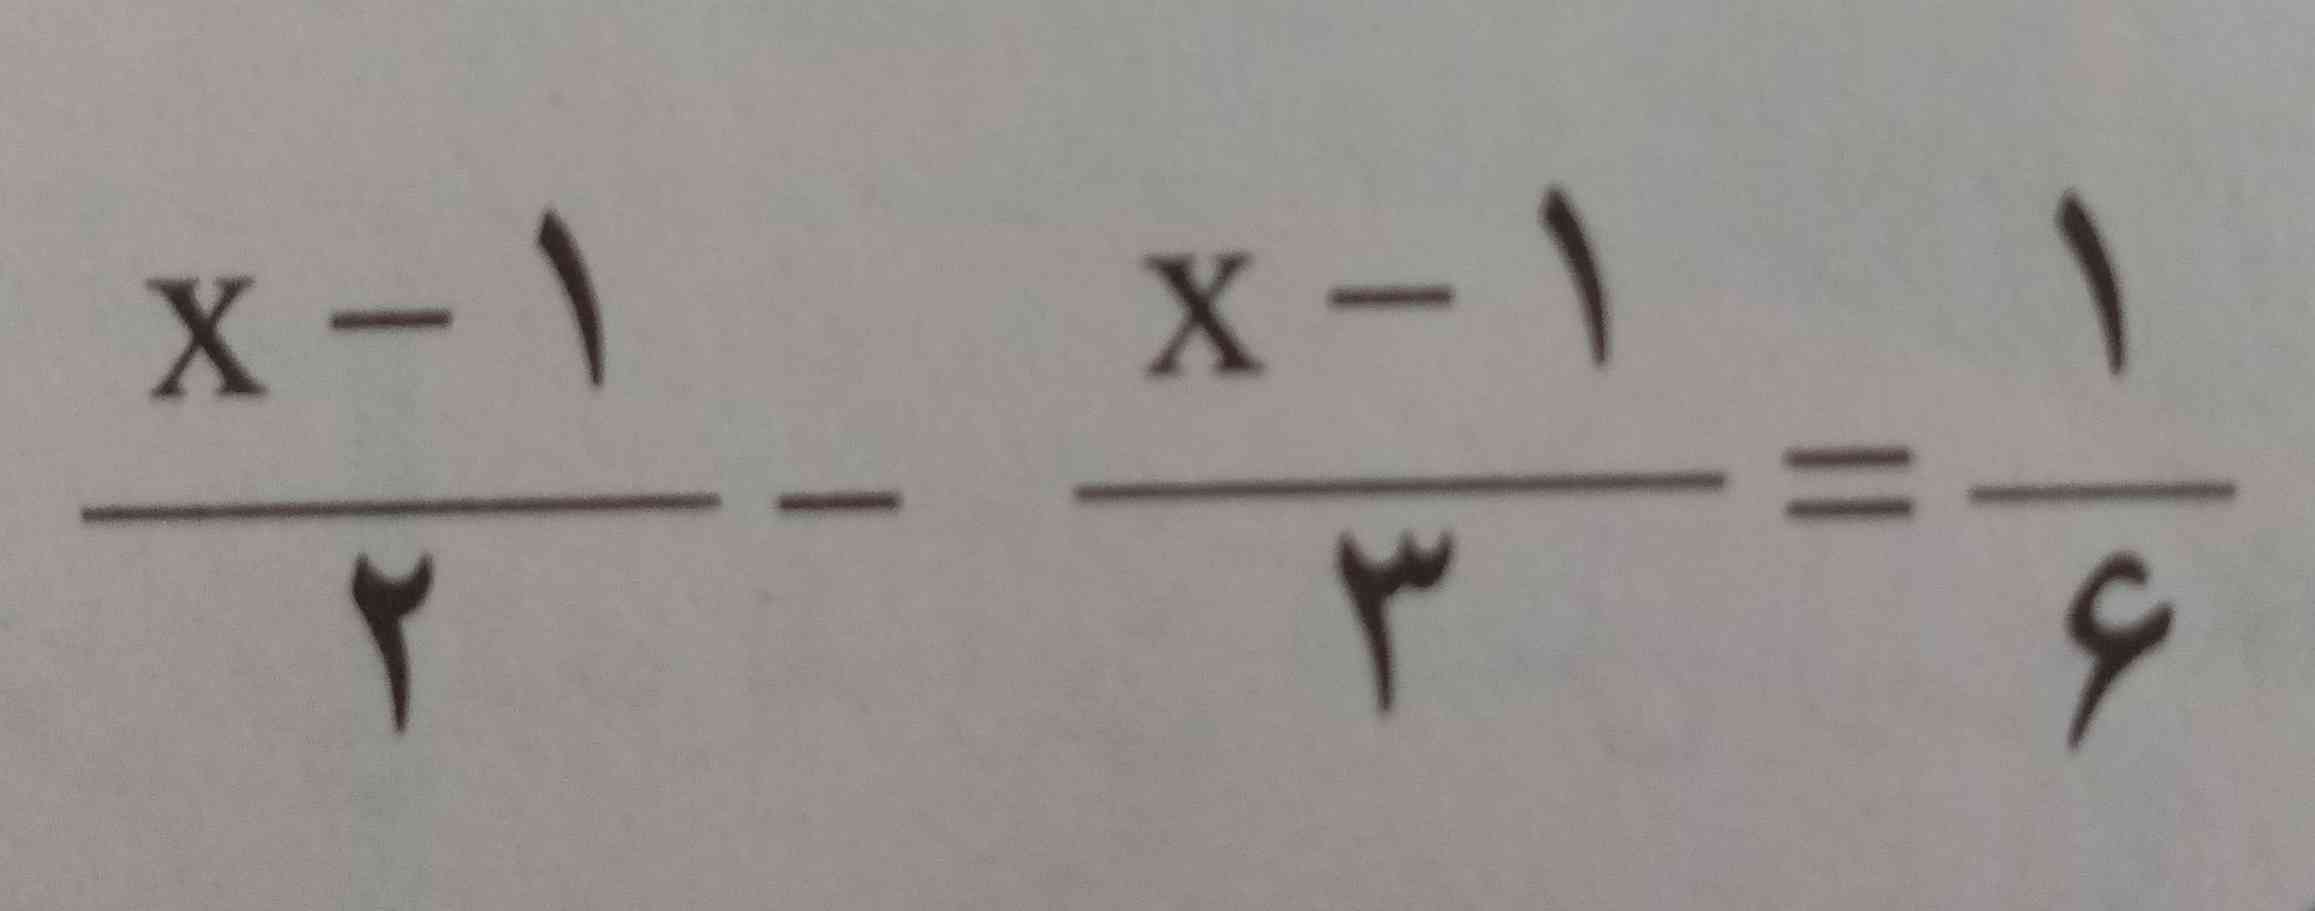 
ایاx=۲ جواب معادله است چرا؟
